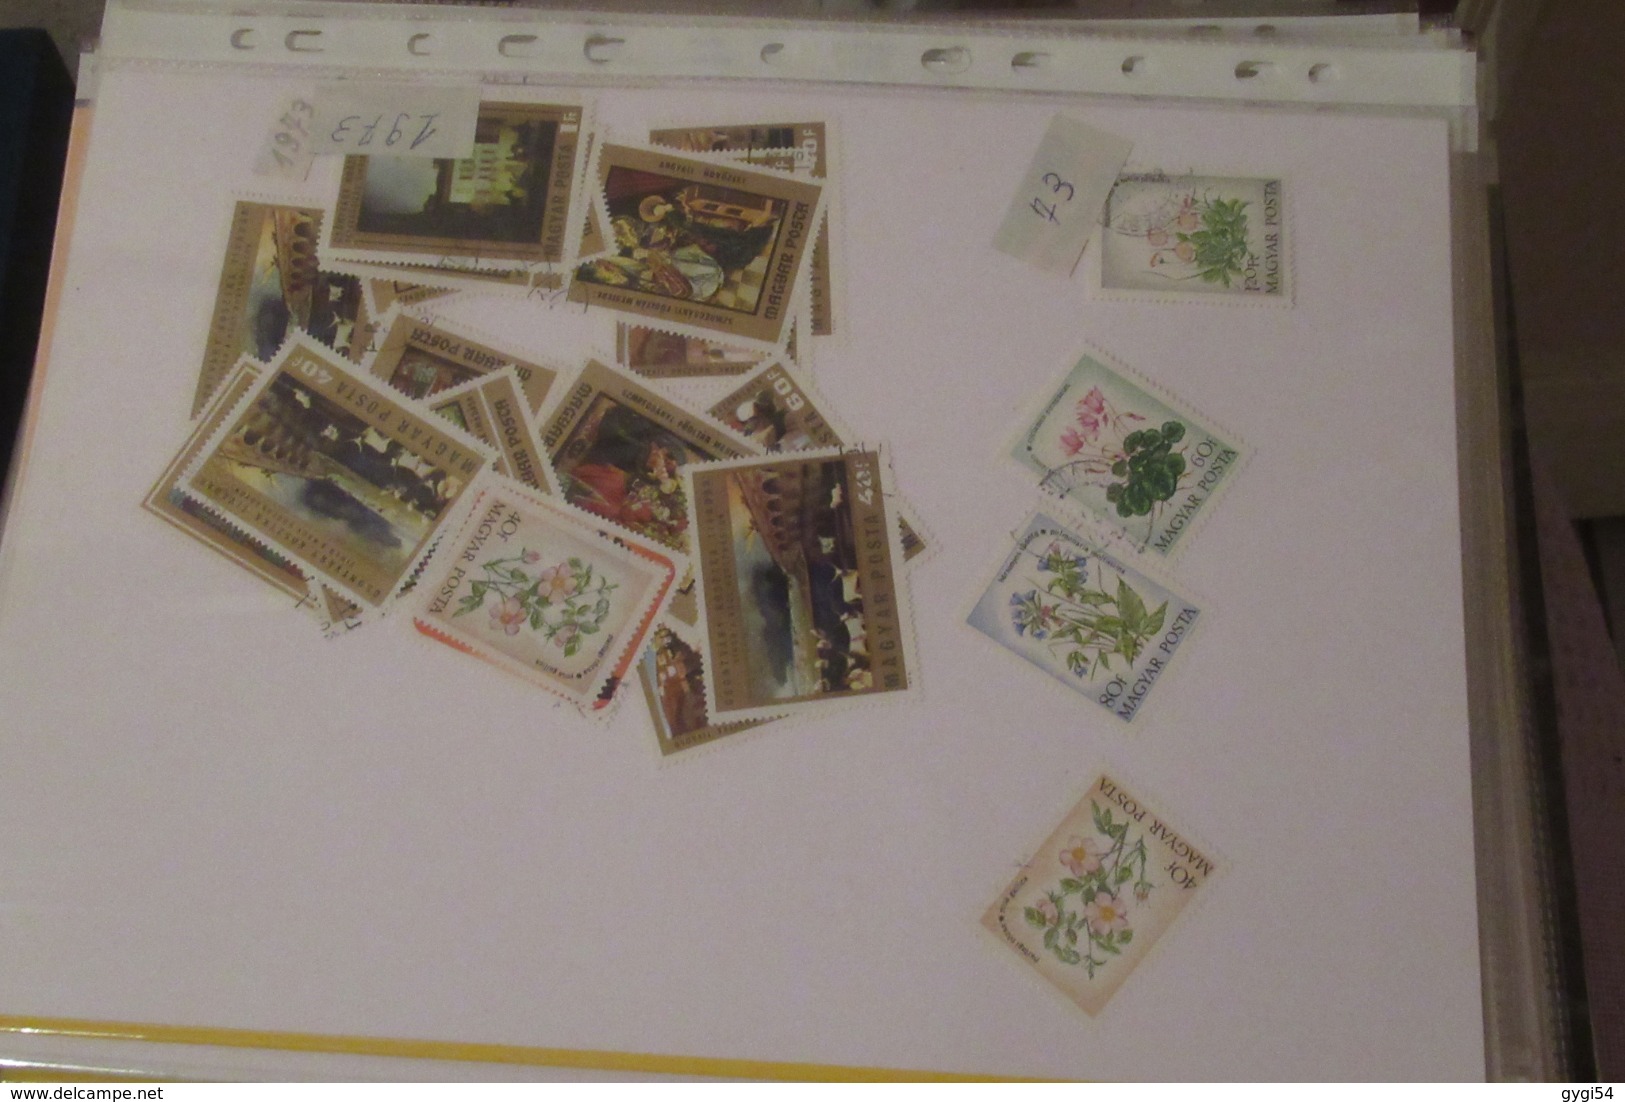 Vrac  divers et  France classeur à bandes timbres français neufs 75 scans